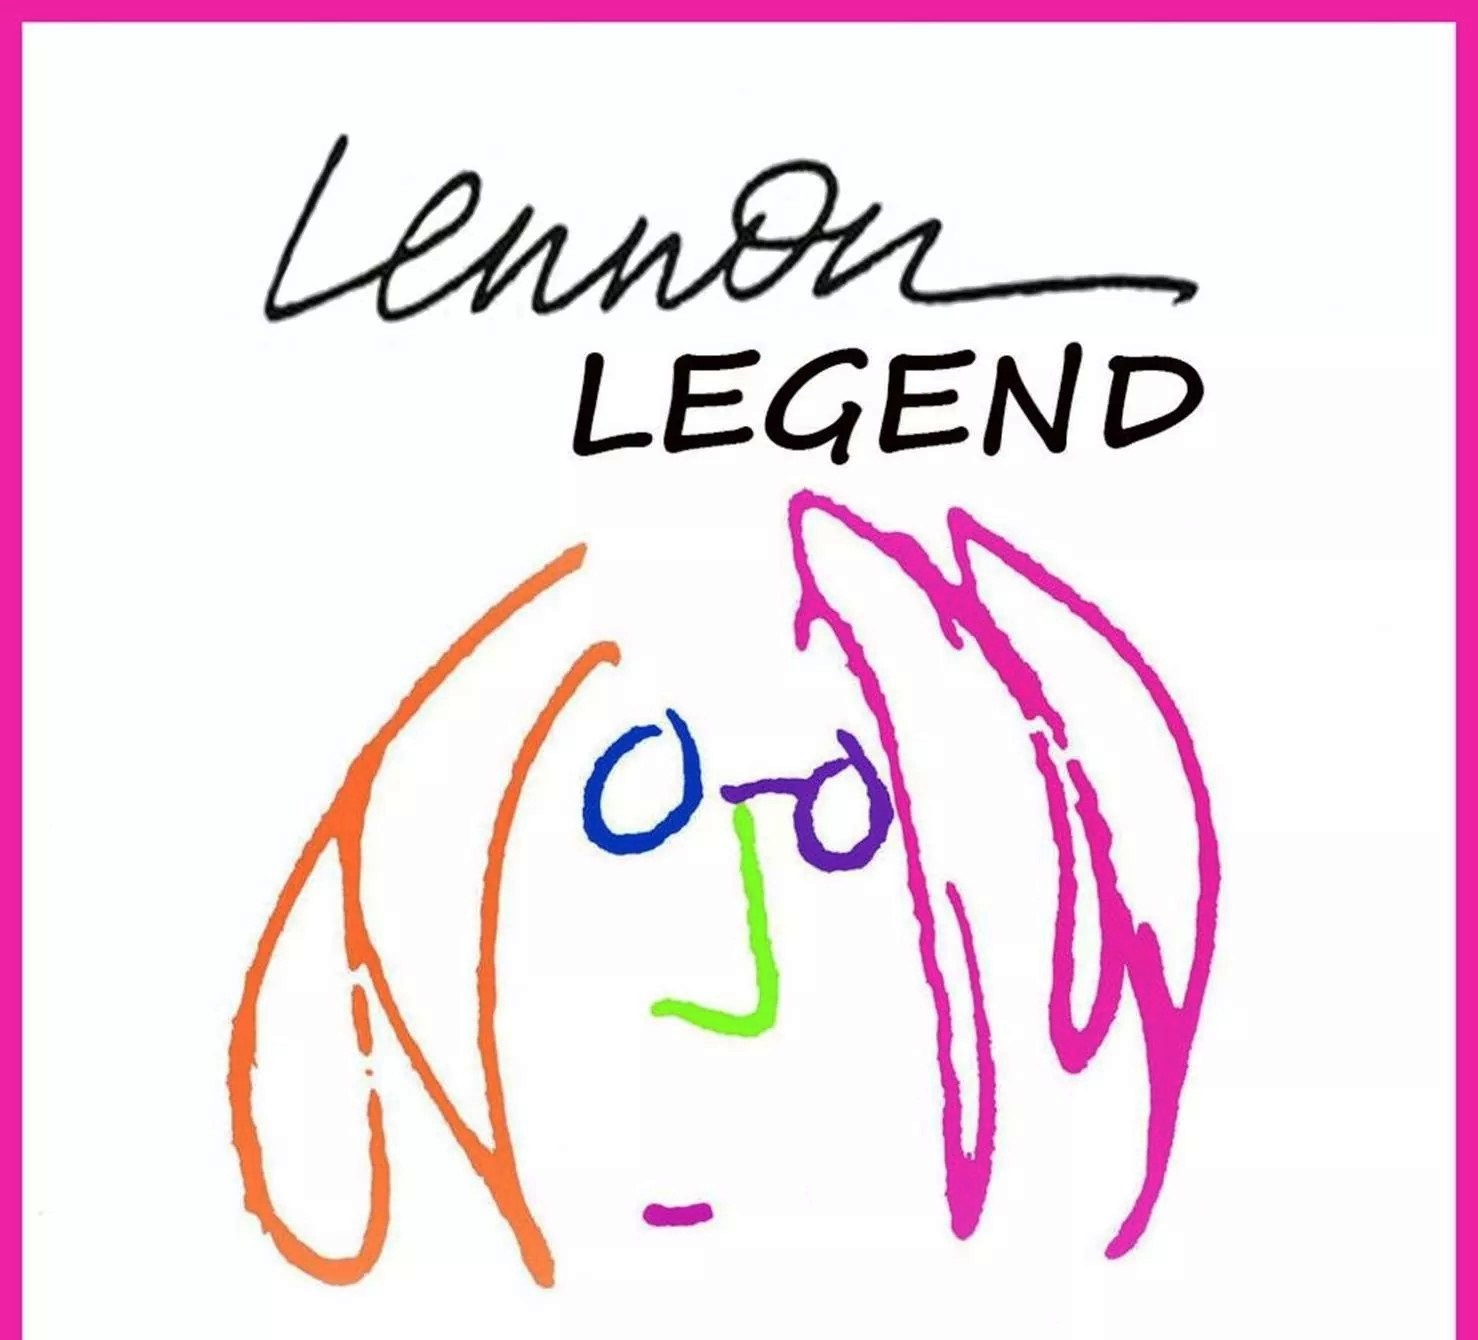 Lennon Legend trio di Antonello Ripepi